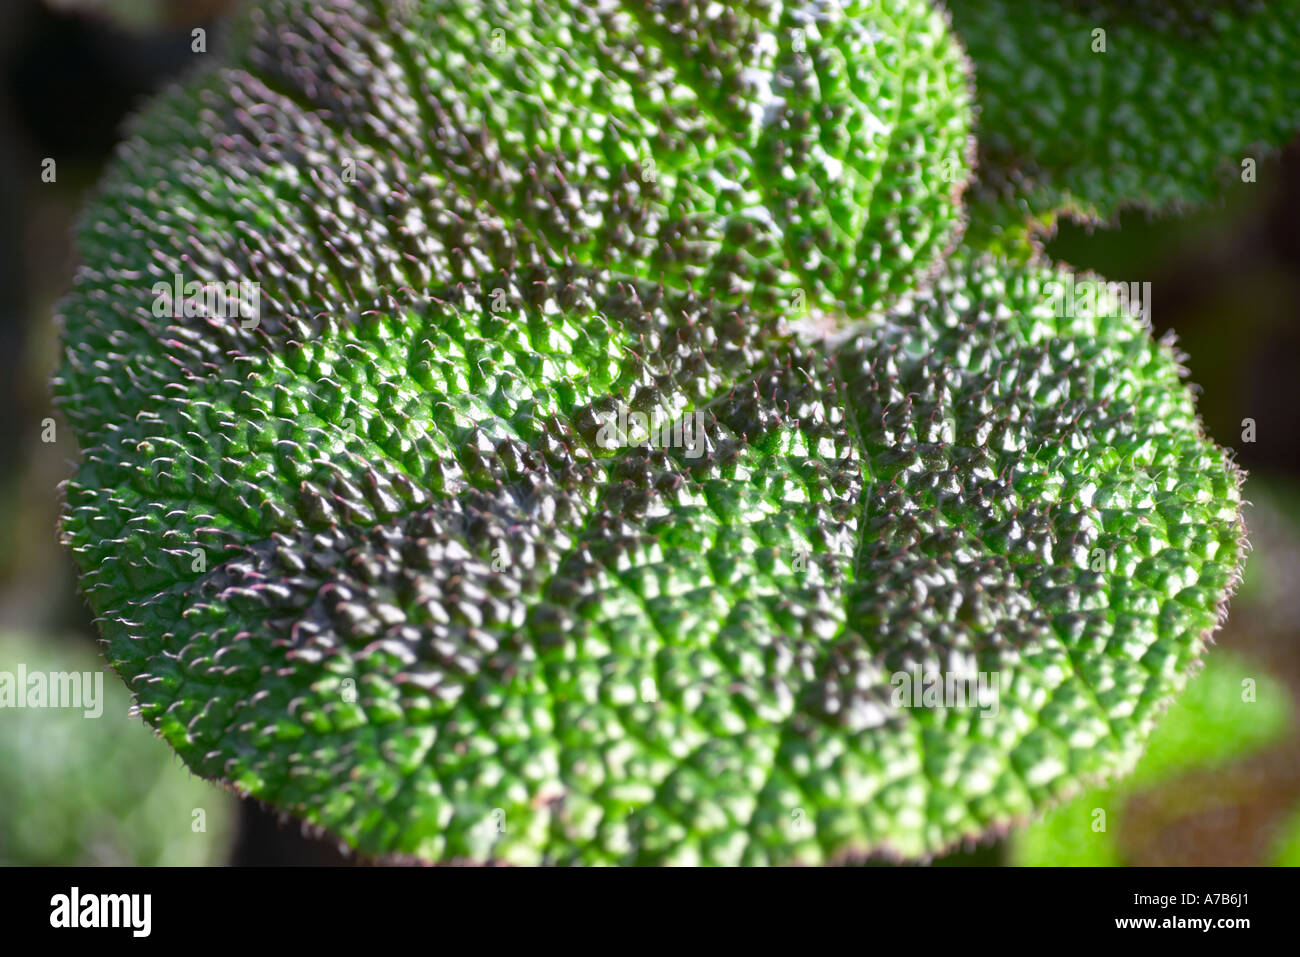 Begonia masoniana leaf close up Stock Photo